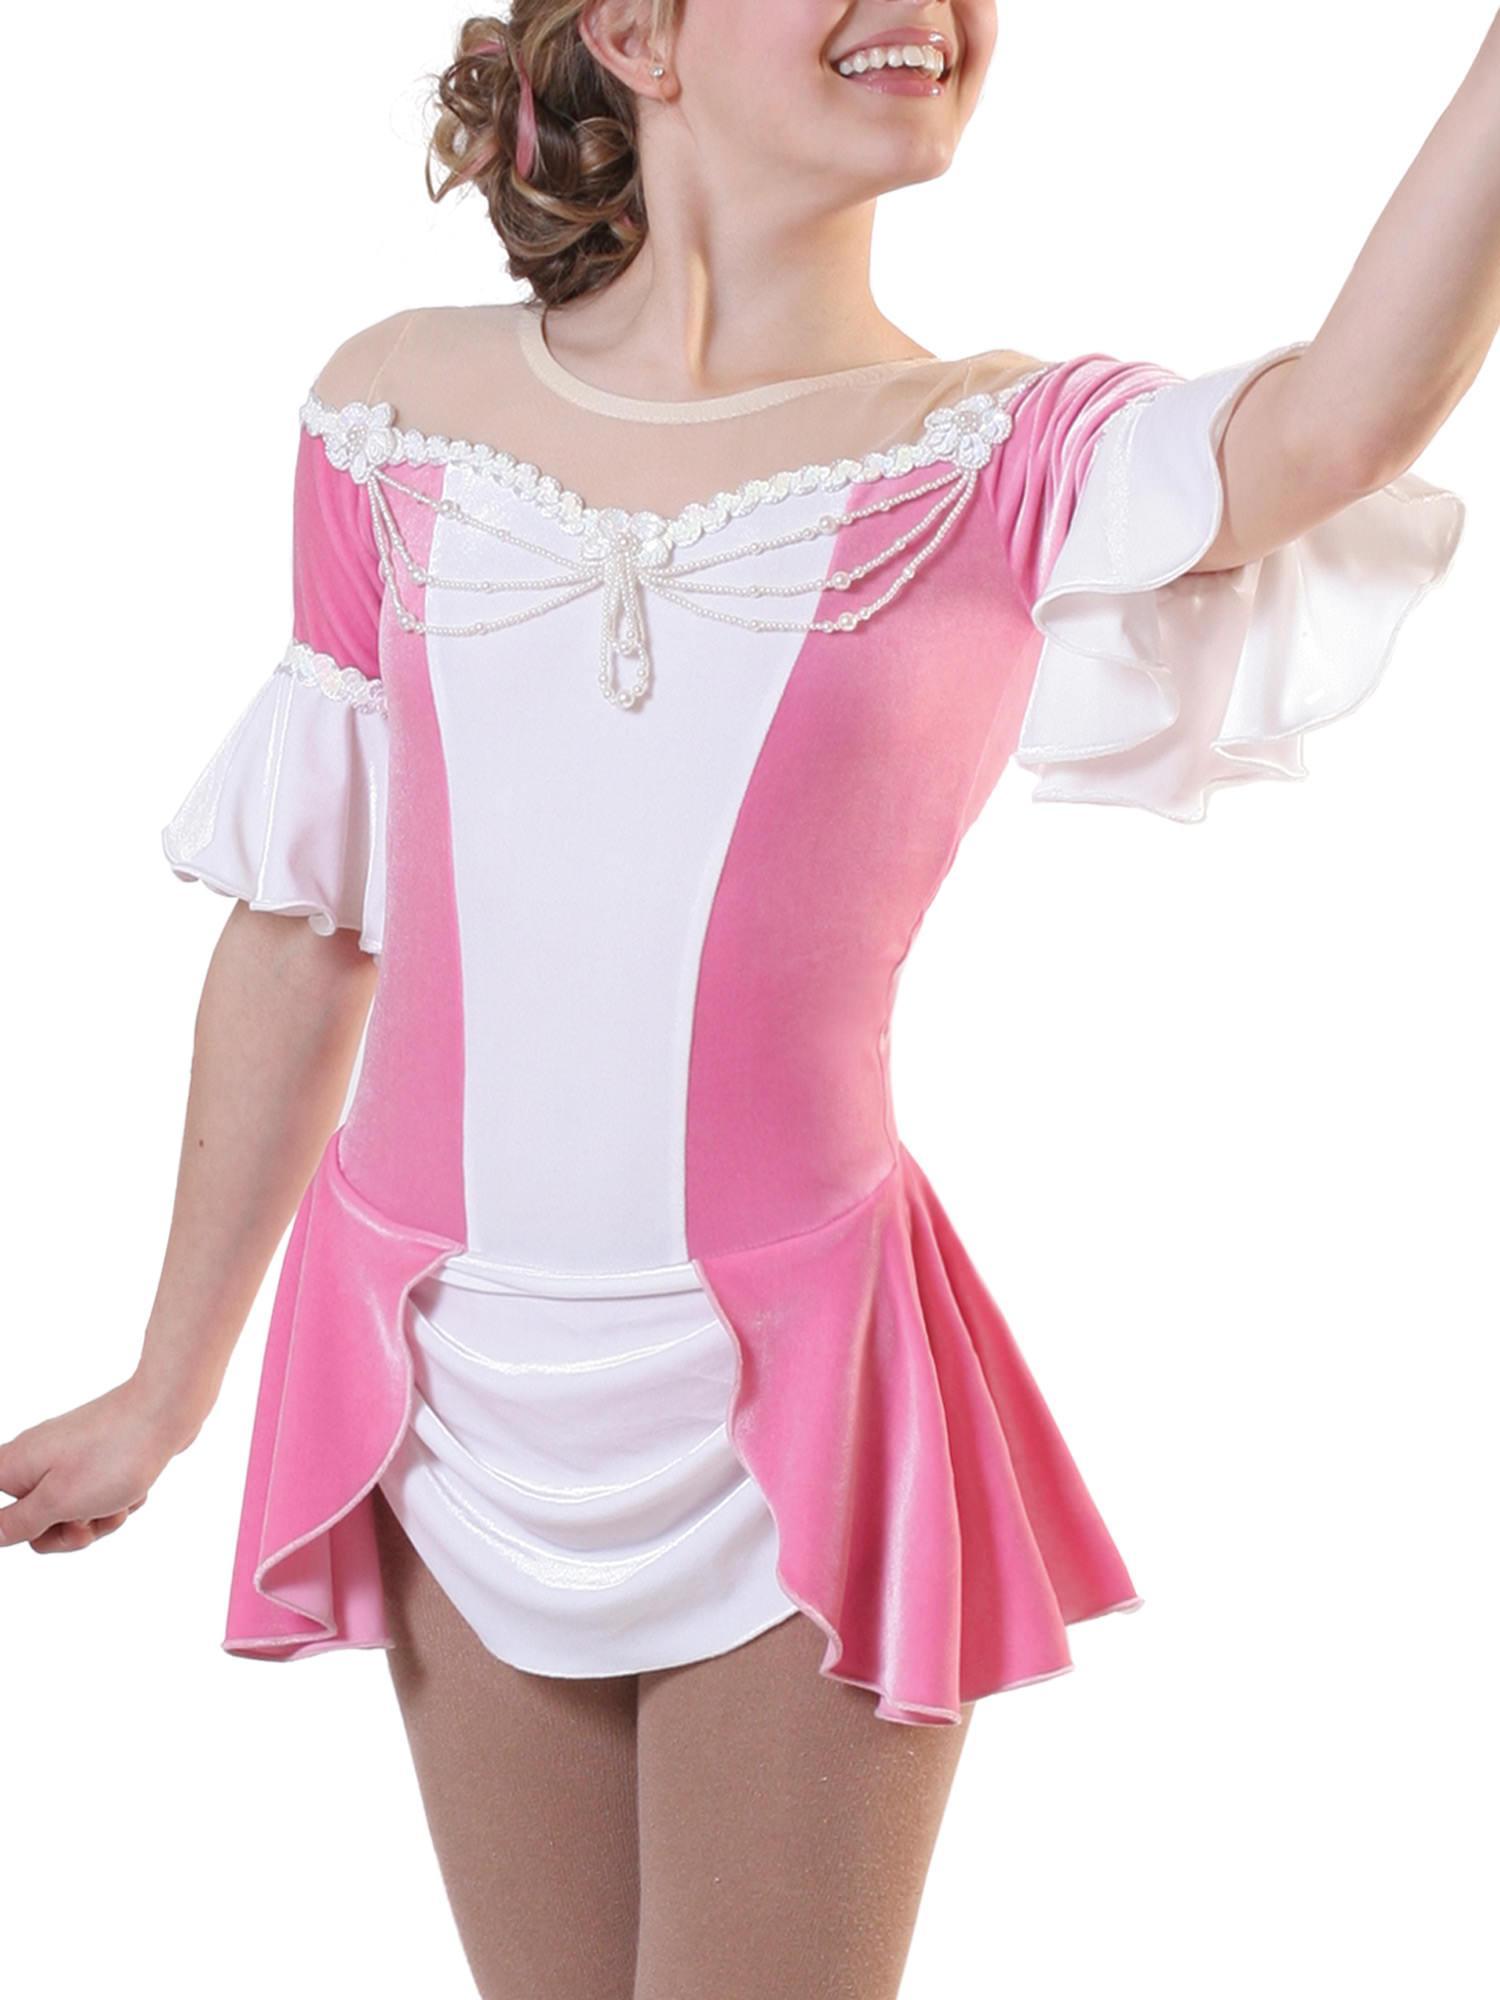 Jalie 2791 - Princess Skating Dress for Girls